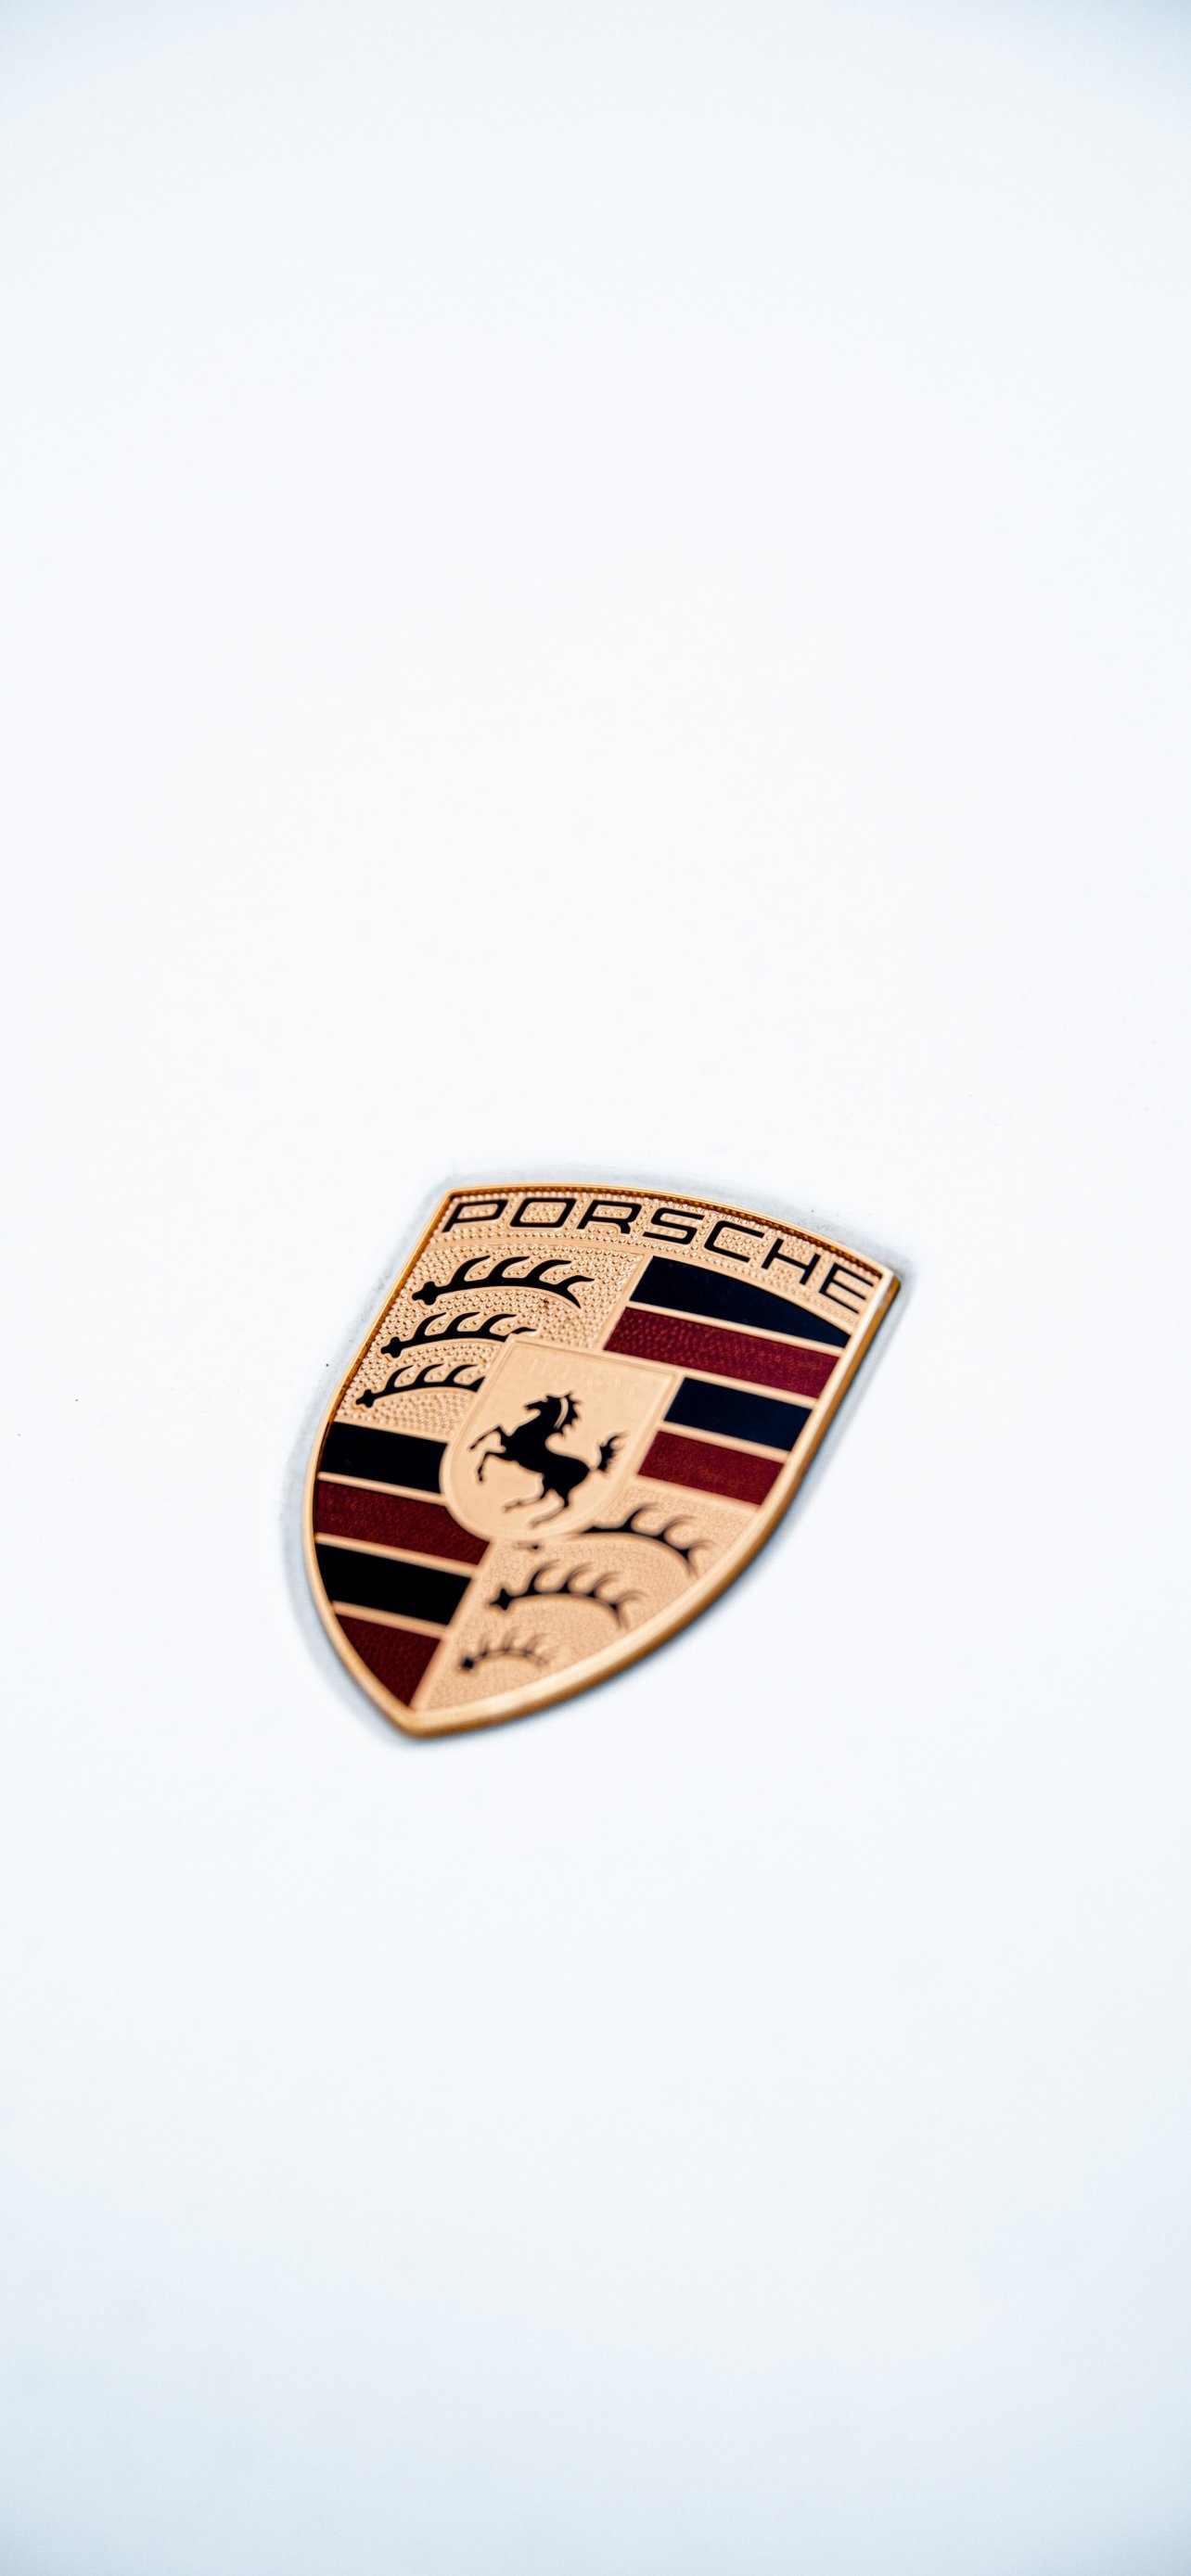 Ferrari позаимствовал логотип у Porsche (ФОТО)